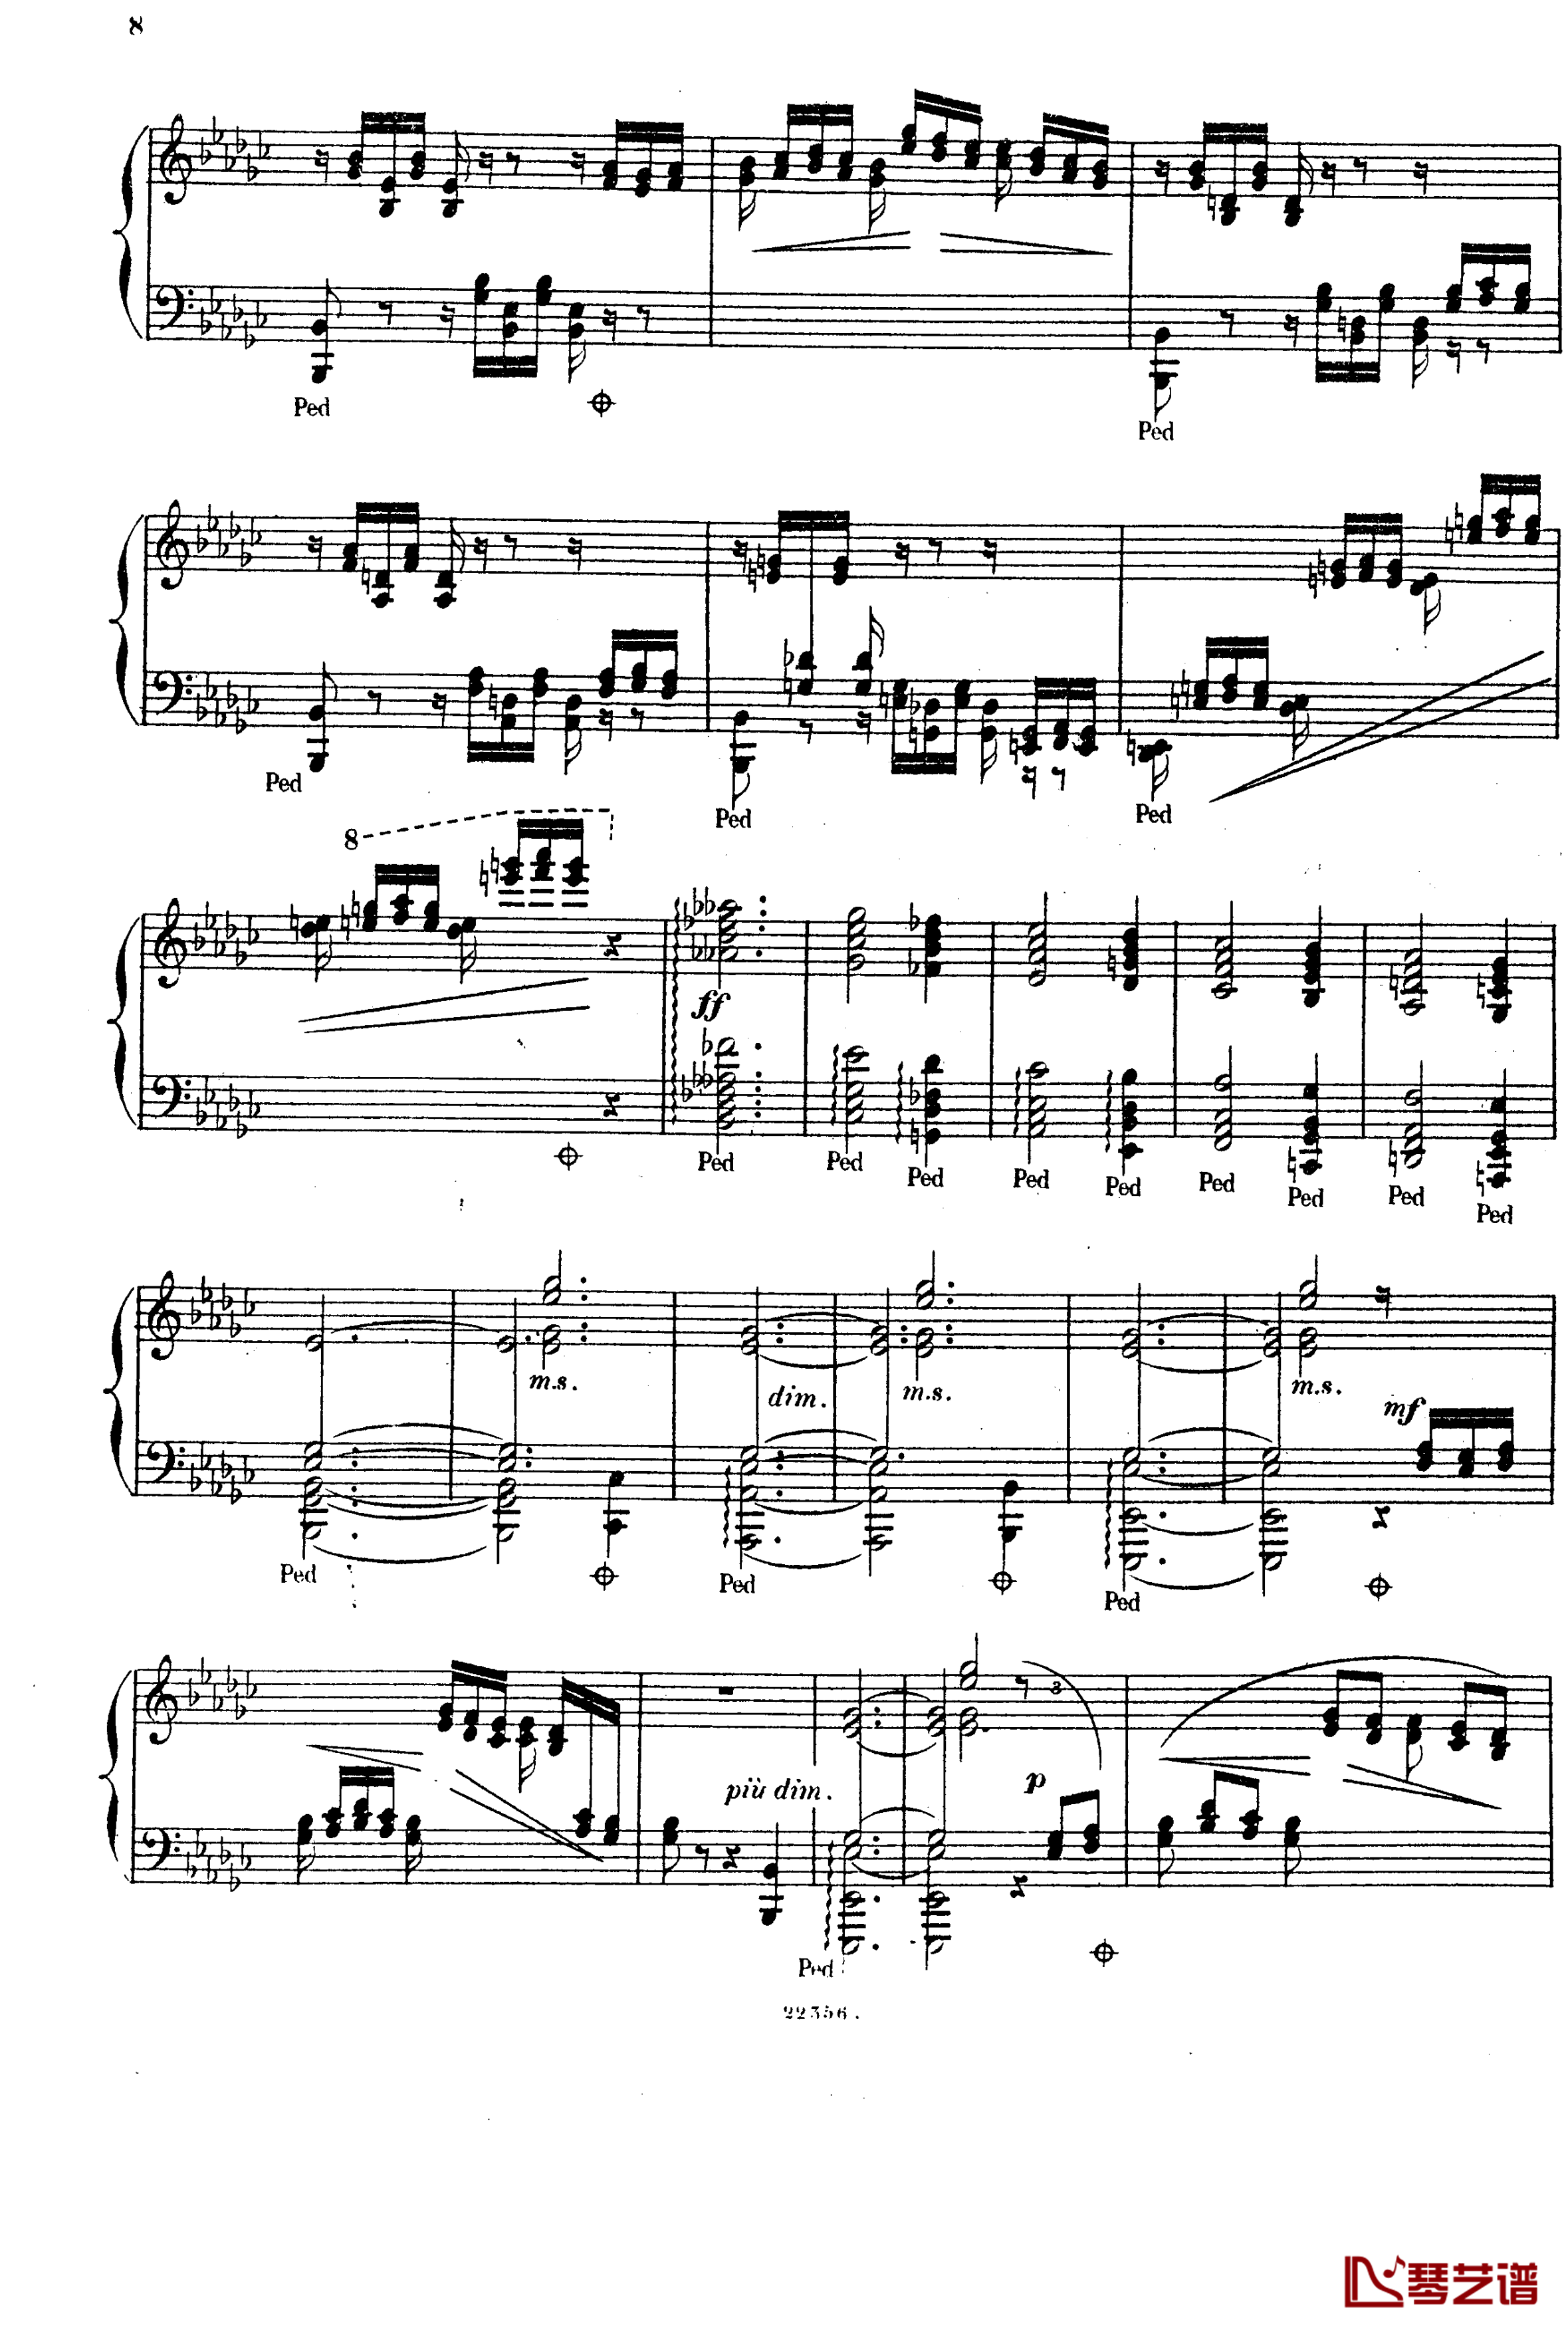  前奏曲与赋格 Op.6钢琴谱-斯甘巴蒂7